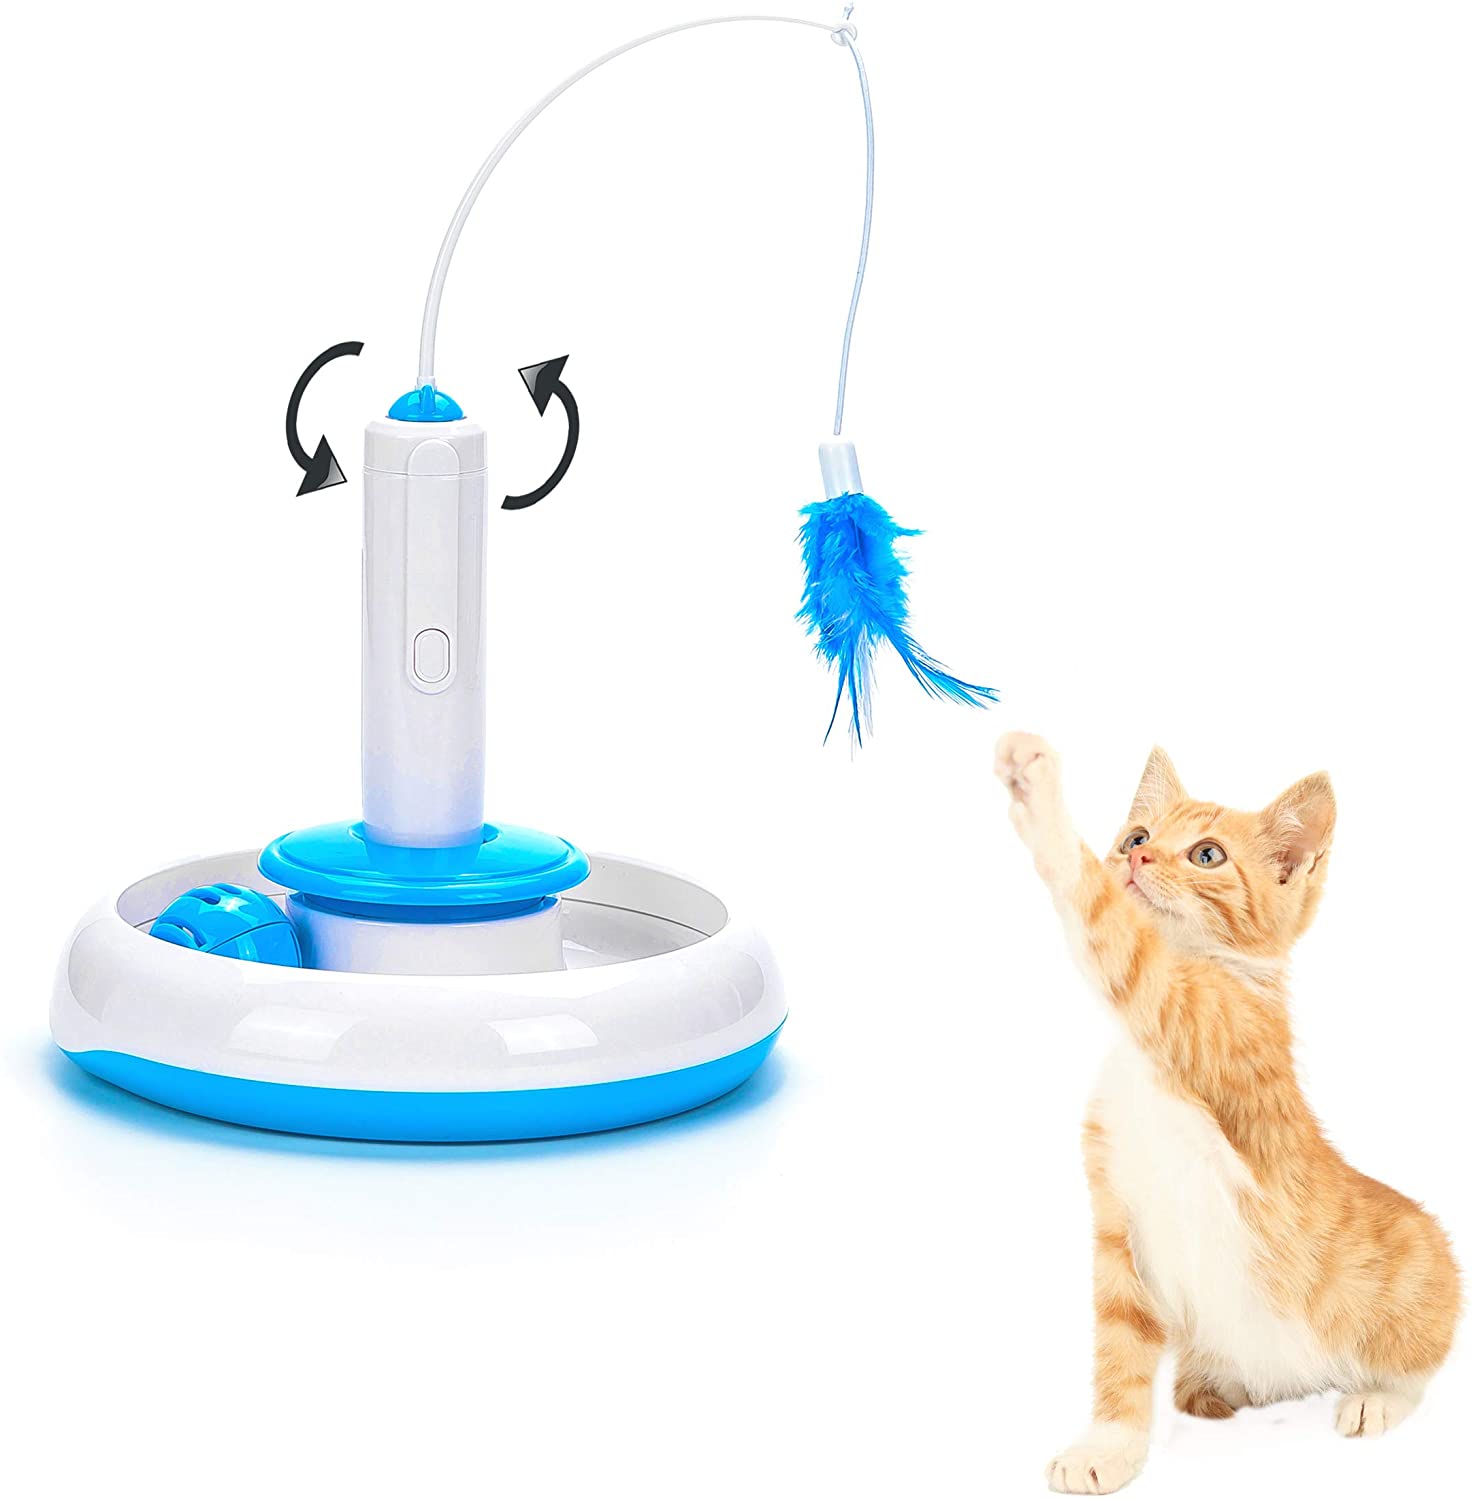  Vealind Juguete Interactivo para Gato con Pluma giratoria eléctrica de 360° y Bola de Timbre con Anillo (Juguete) 